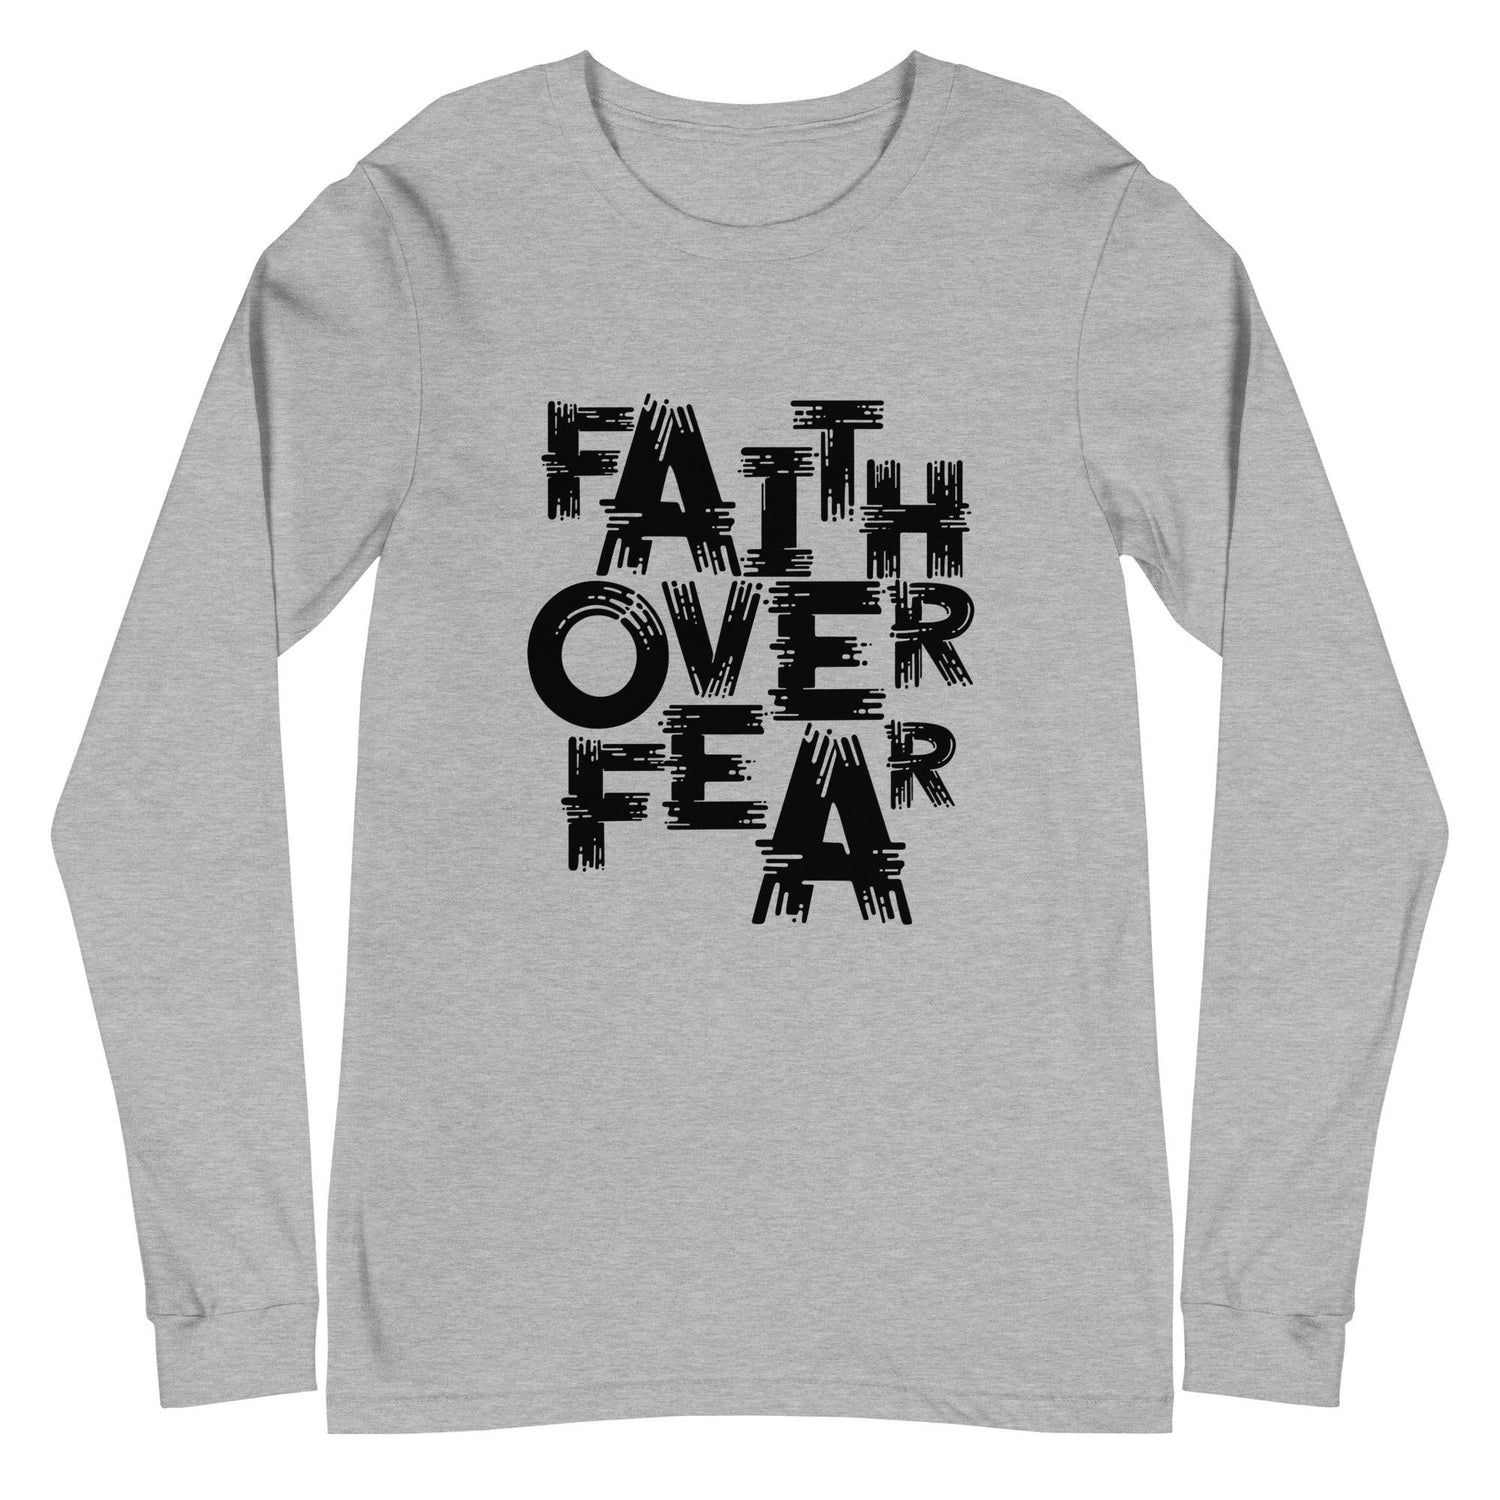 Diondre Borel "Faith Over Fear" Long Sleeve Tee - Fan Arch